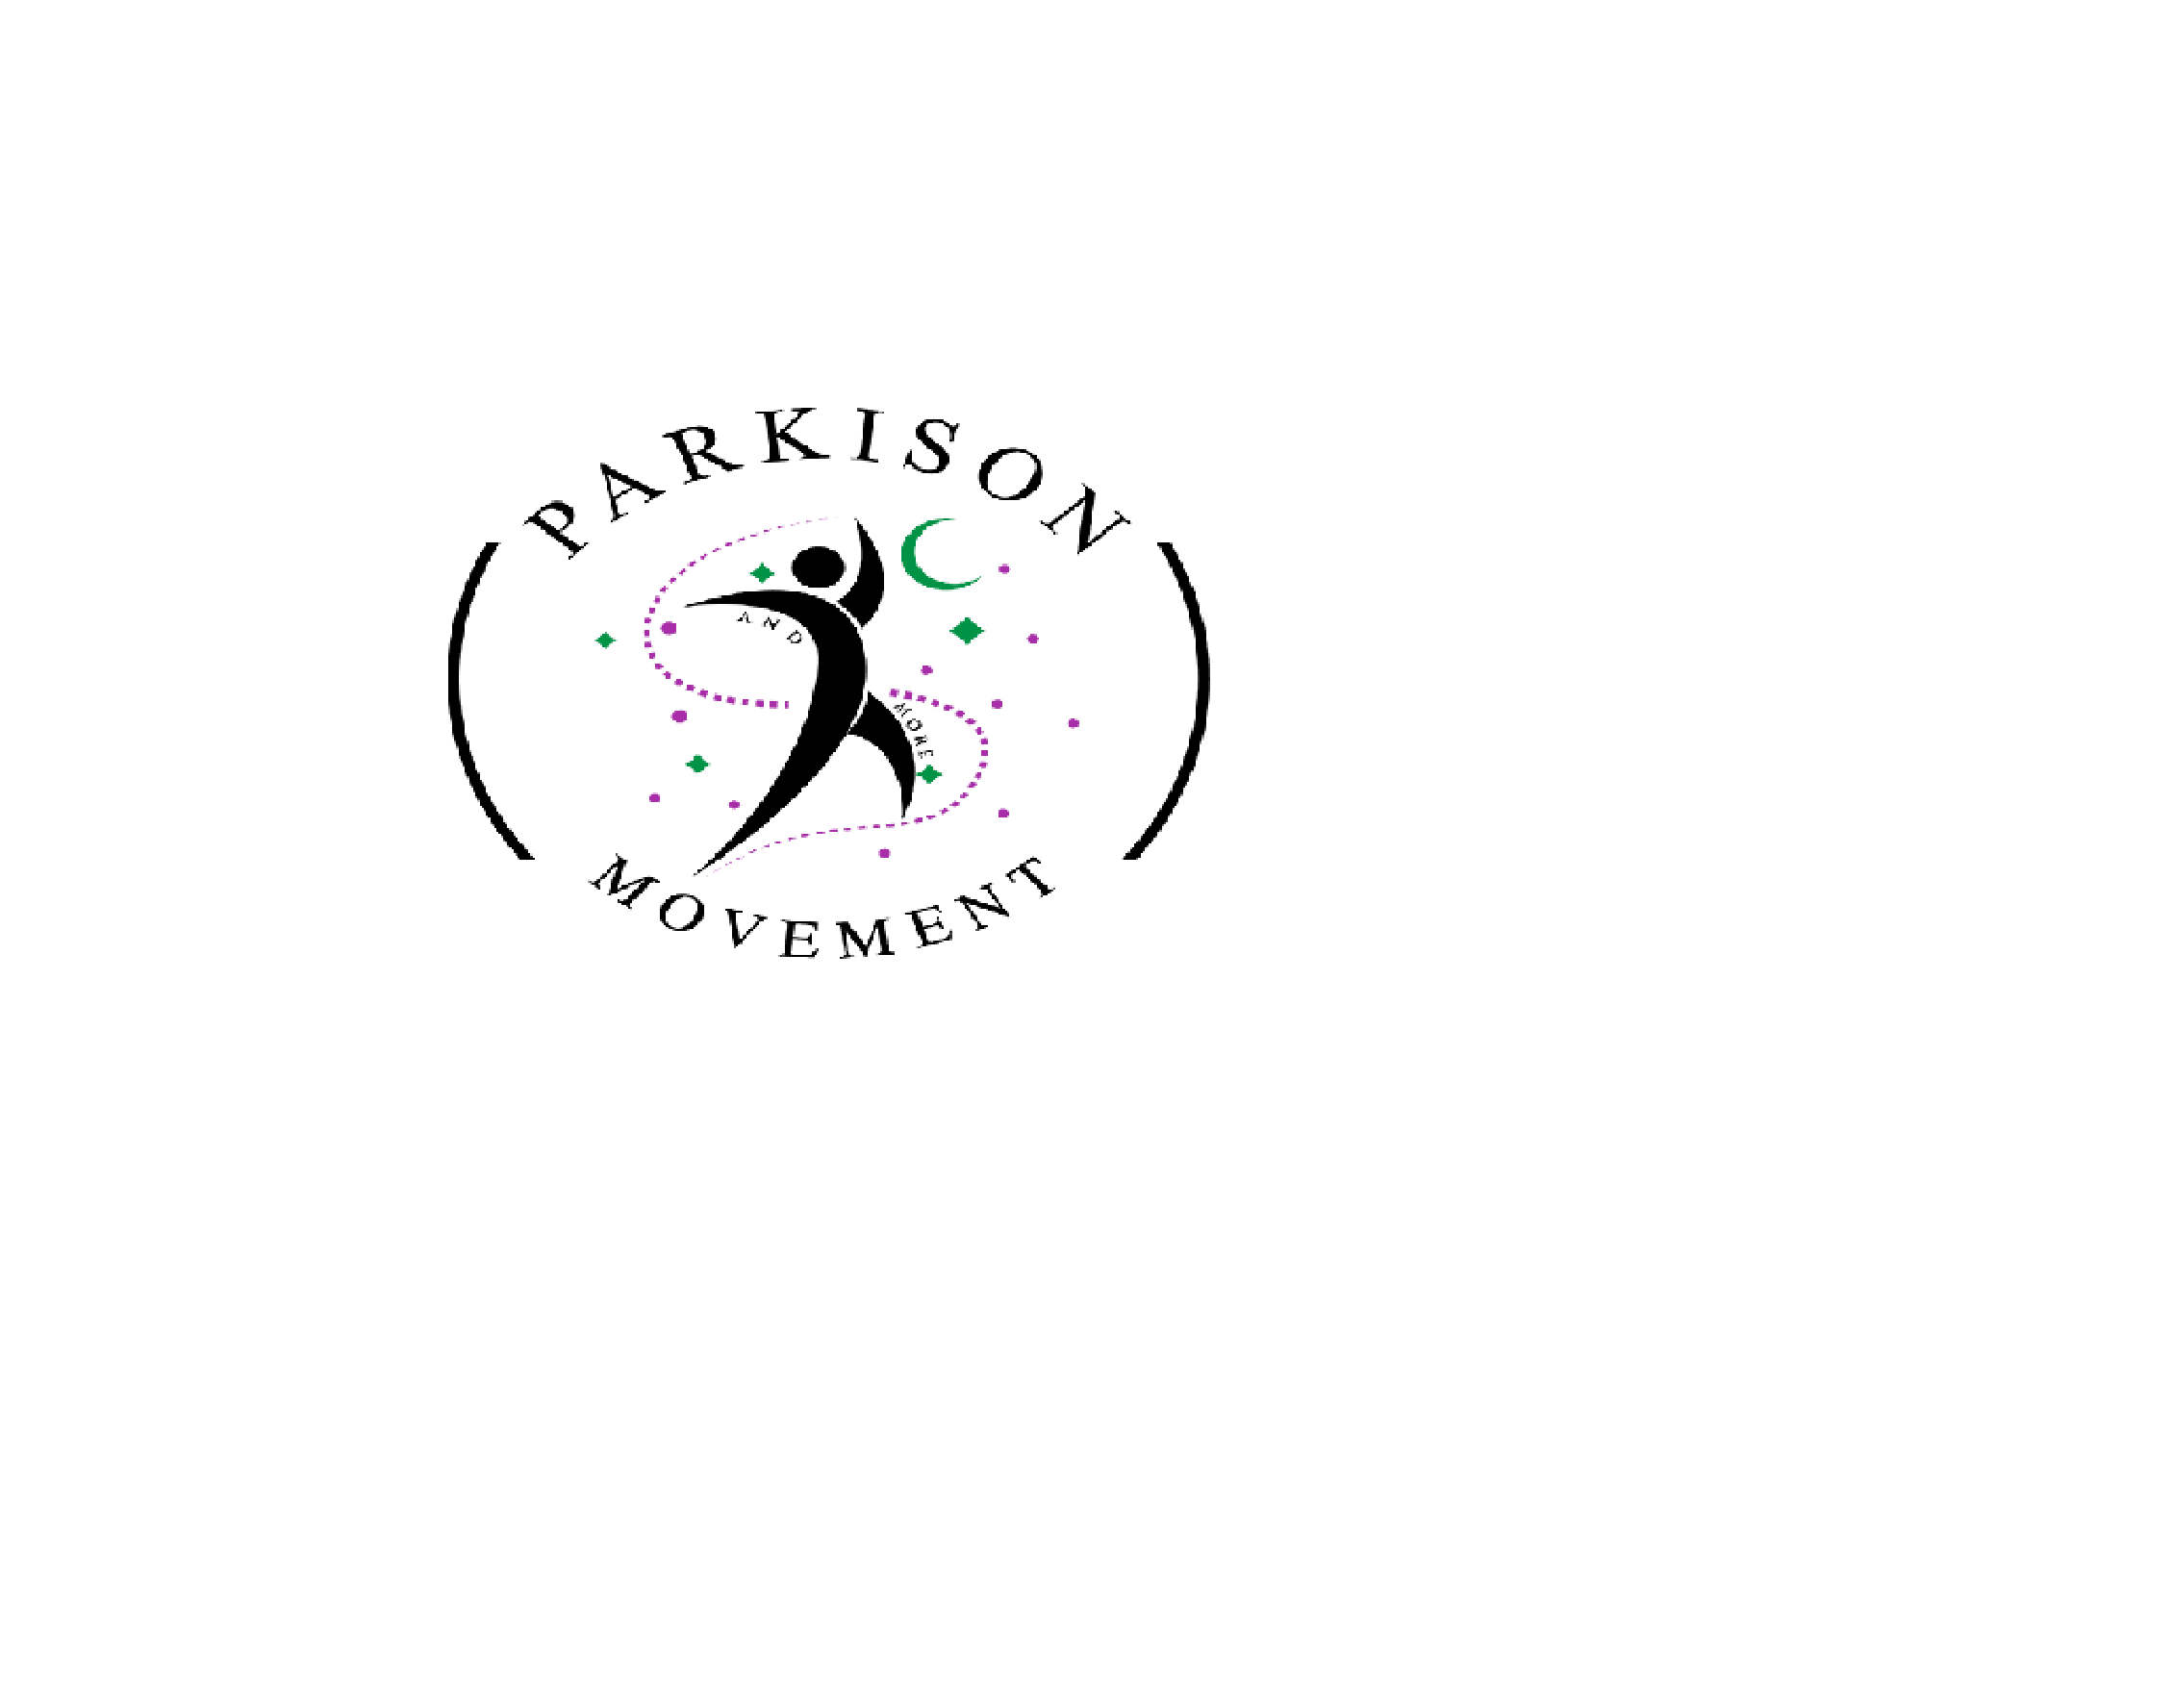 Parkinson Movement